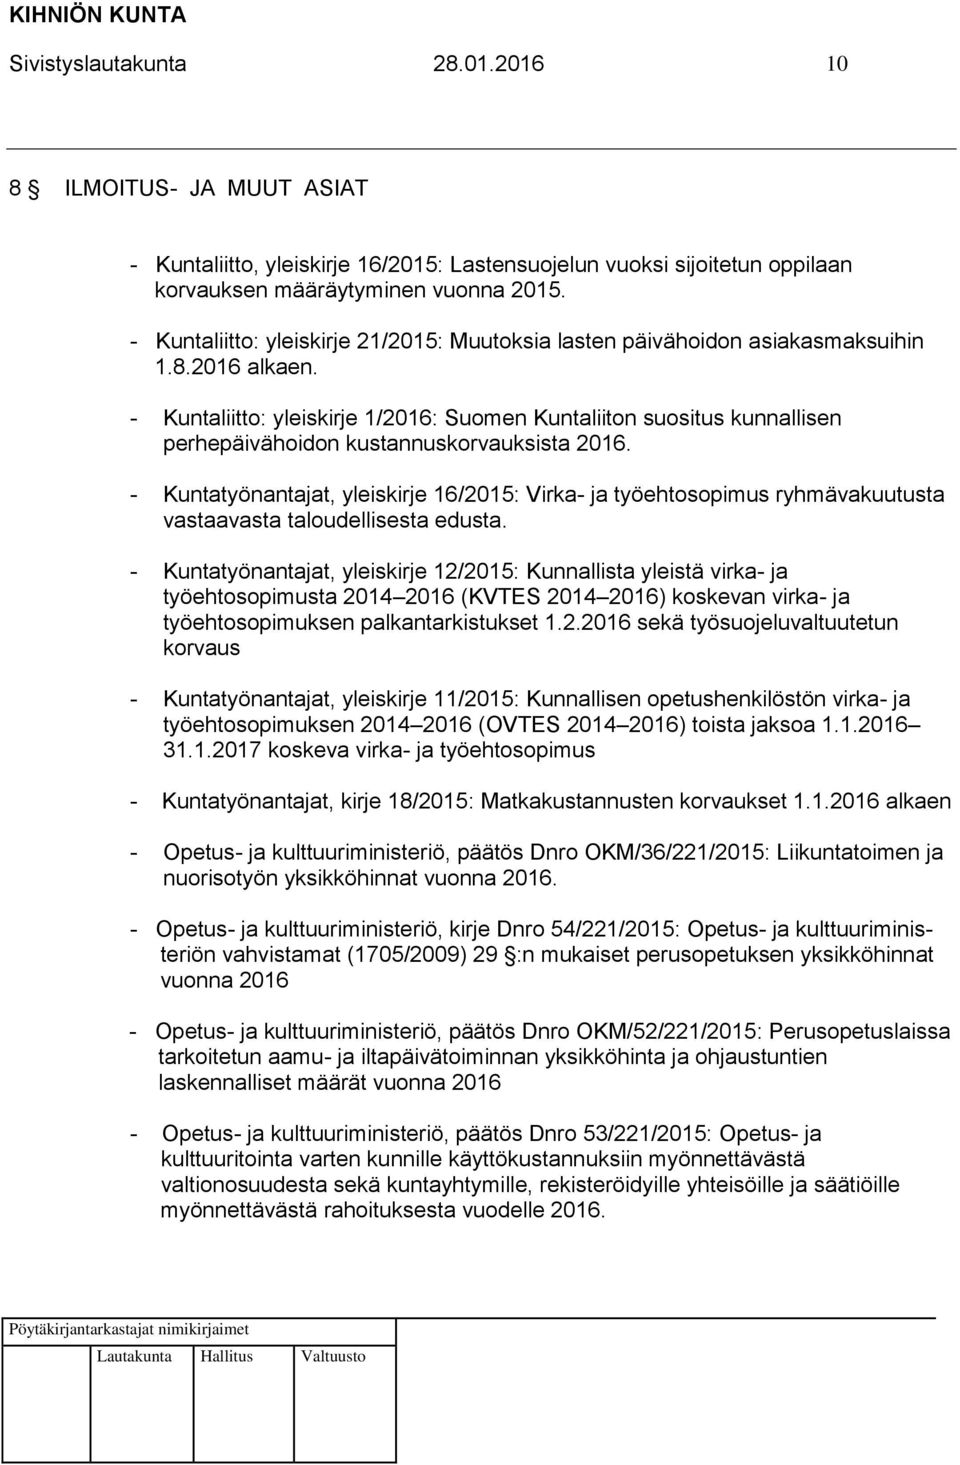 - Kuntaliitto: yleiskirje 1/2016: Suomen Kuntaliiton suositus kunnallisen perhepäivähoidon kustannuskorvauksista 2016.